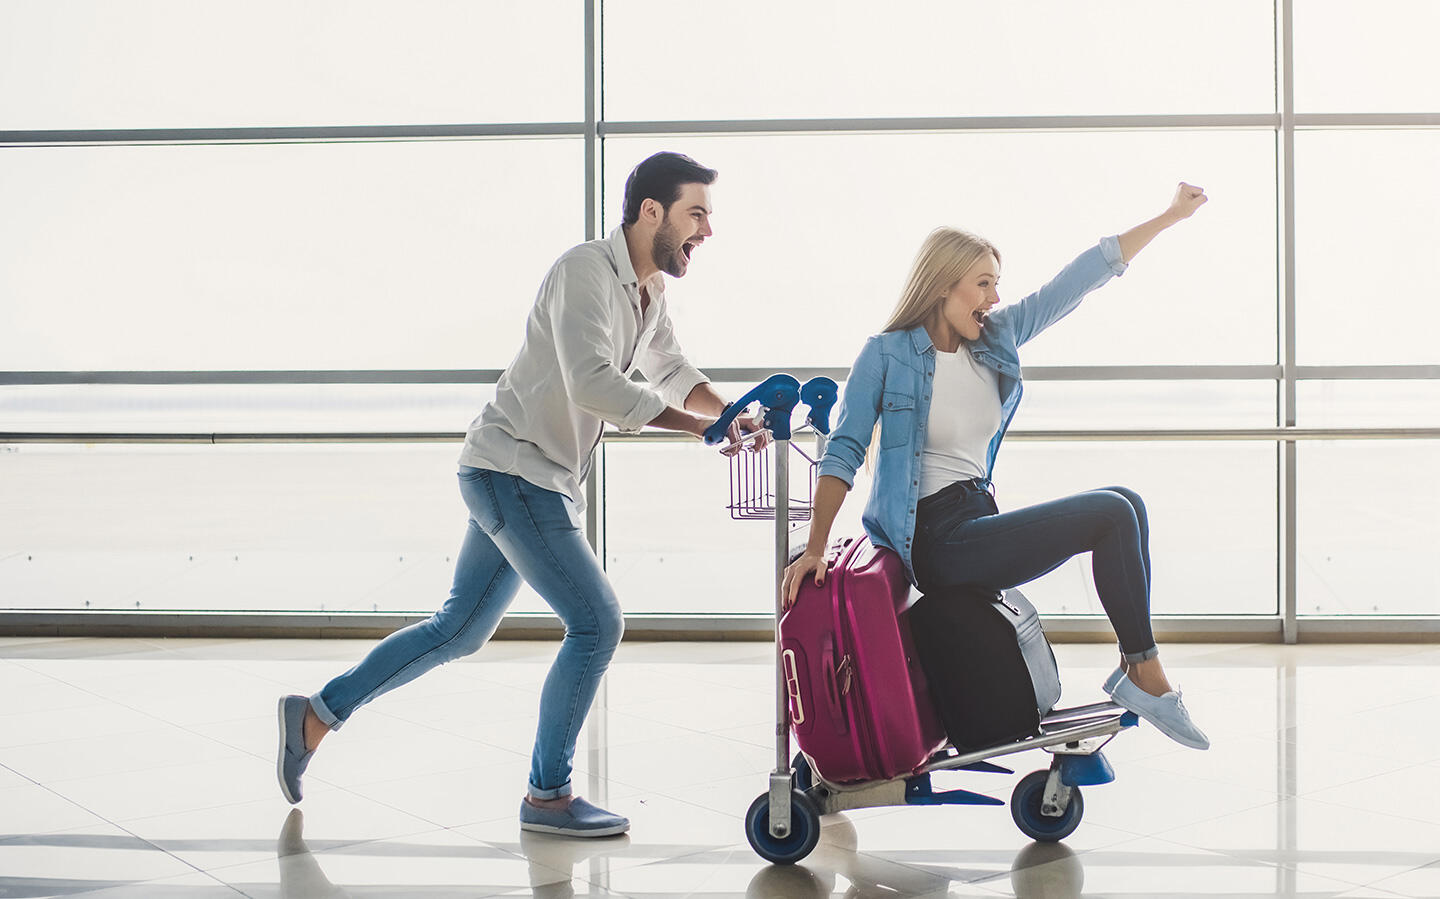 Ein fröhliches Paar am Flughafen Orly, der Mann schiebt die Frau auf einem Gepäckwagen